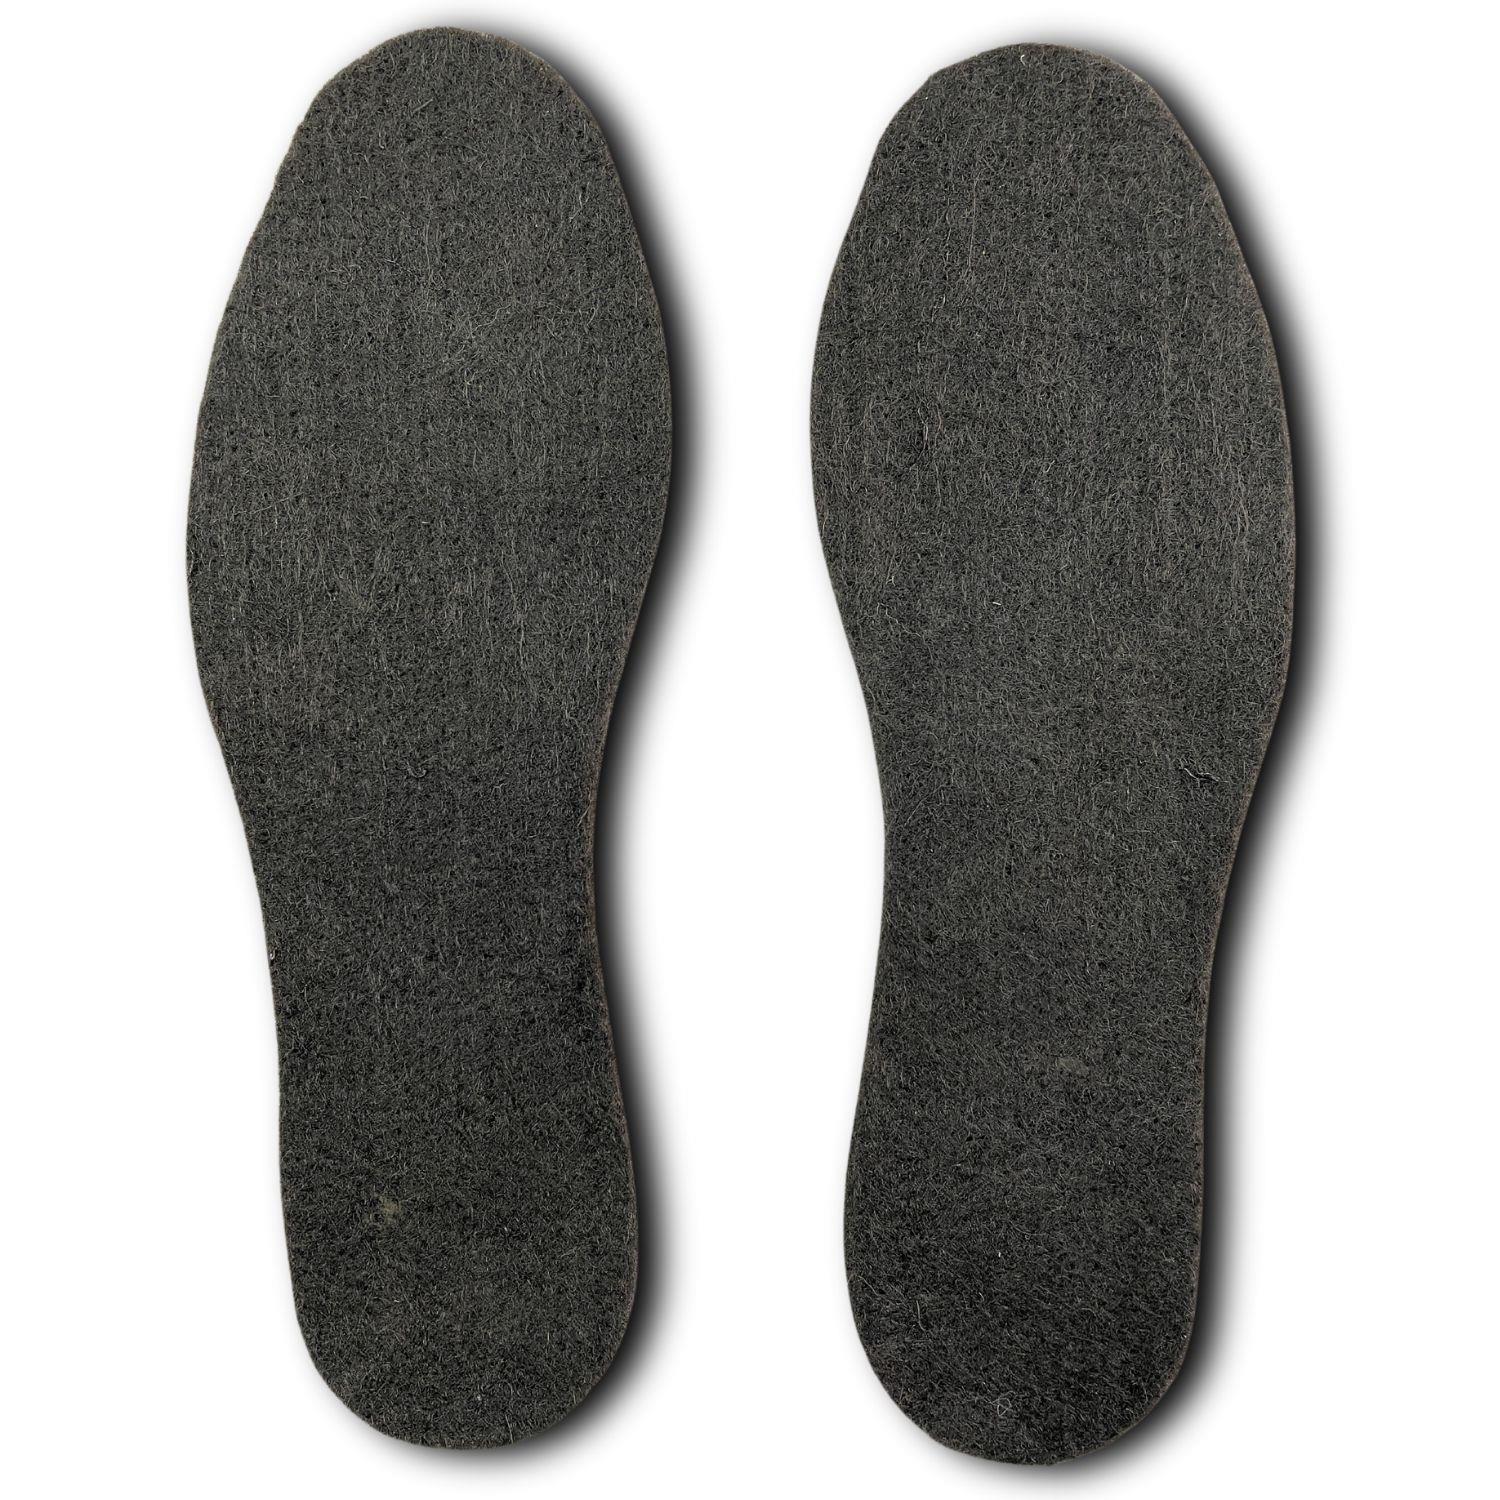 Siyah Saf Yün Keçe Tabanlık, Kışlık Bot Ayakkabı Tabanı 9 mm, 1 Çift